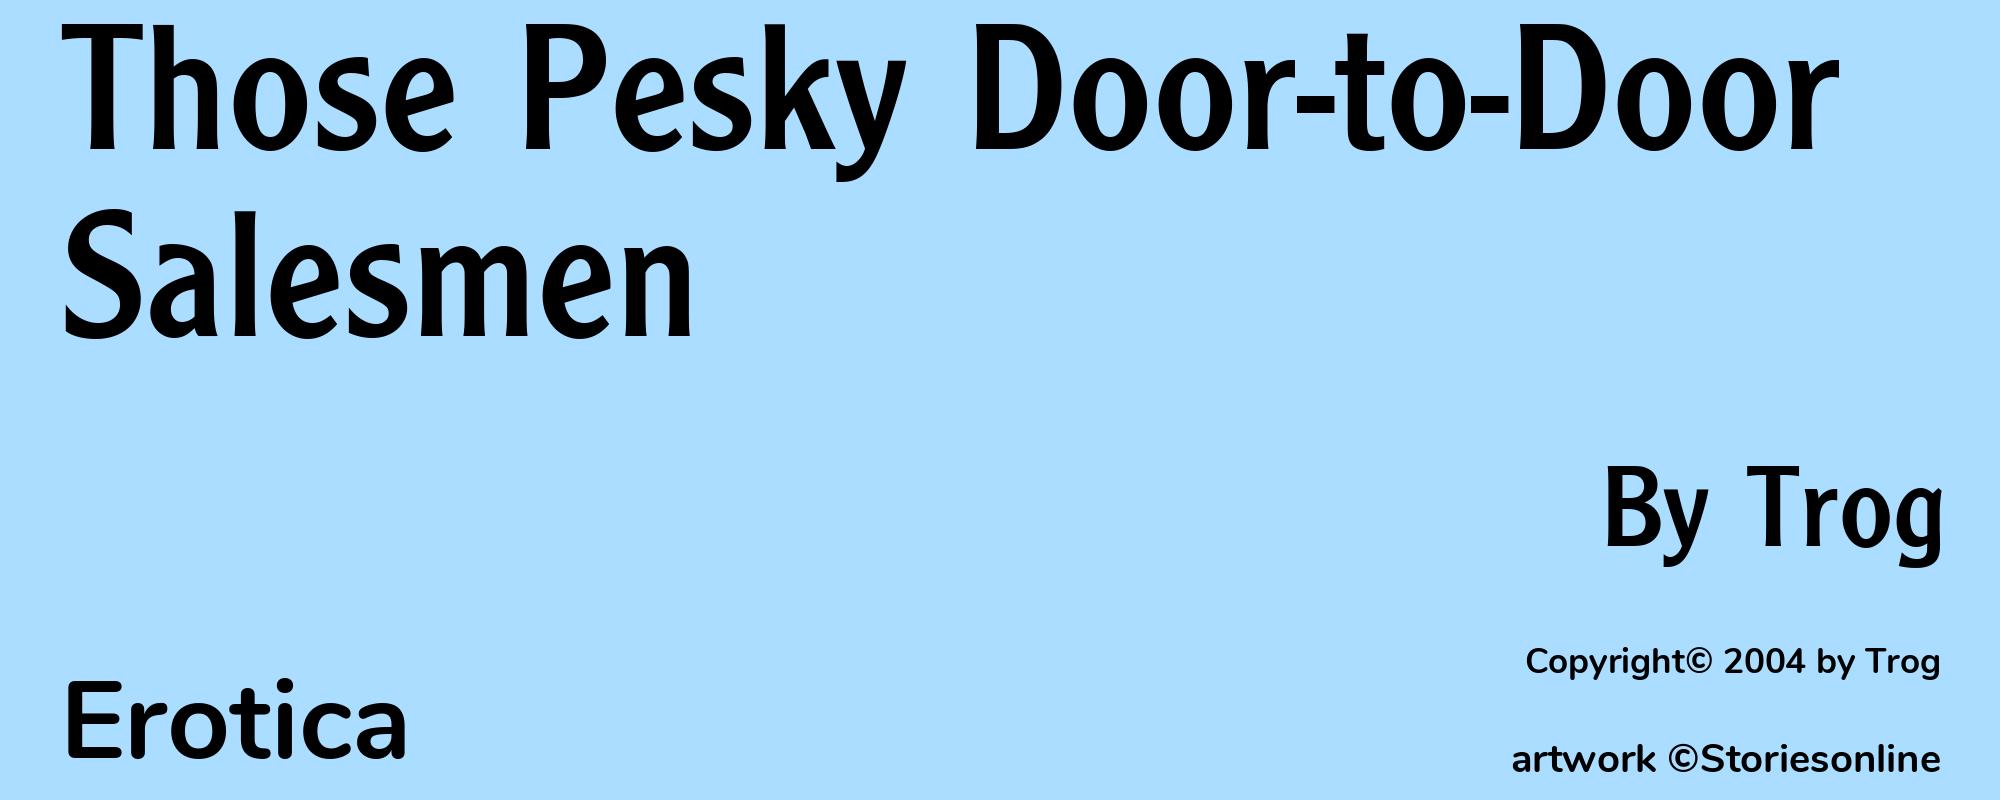 Those Pesky Door-to-Door Salesmen - Cover